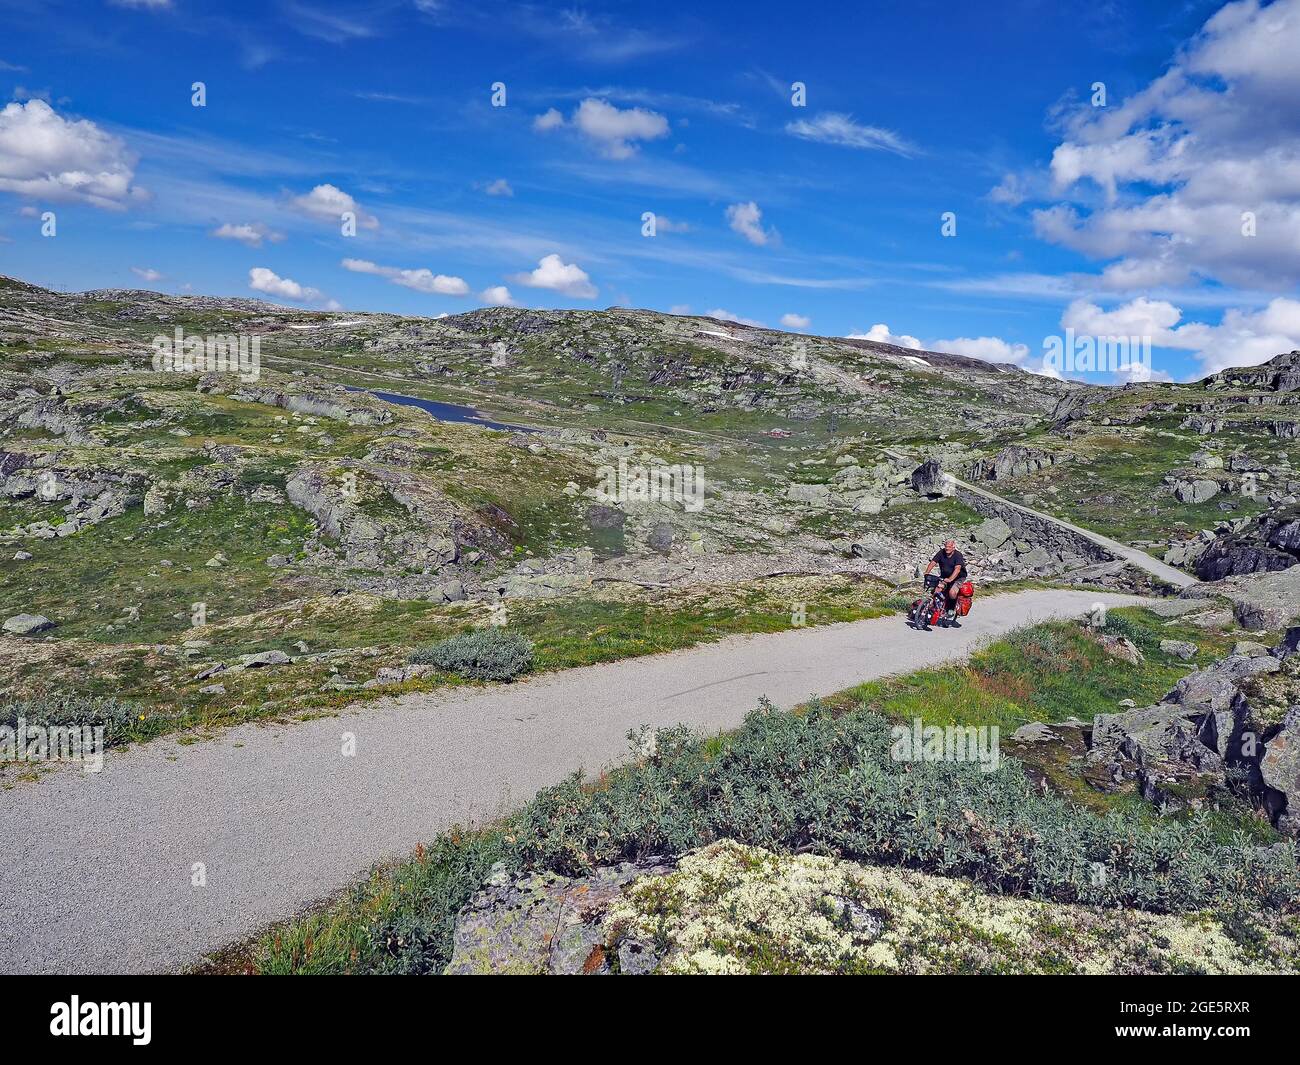 Cyclistes sur un sentier montagneux de gravier qui serpend à travers le paysage tombé, voyage à vélo, aventure, été, Rallrveien, Scandinavie Banque D'Images